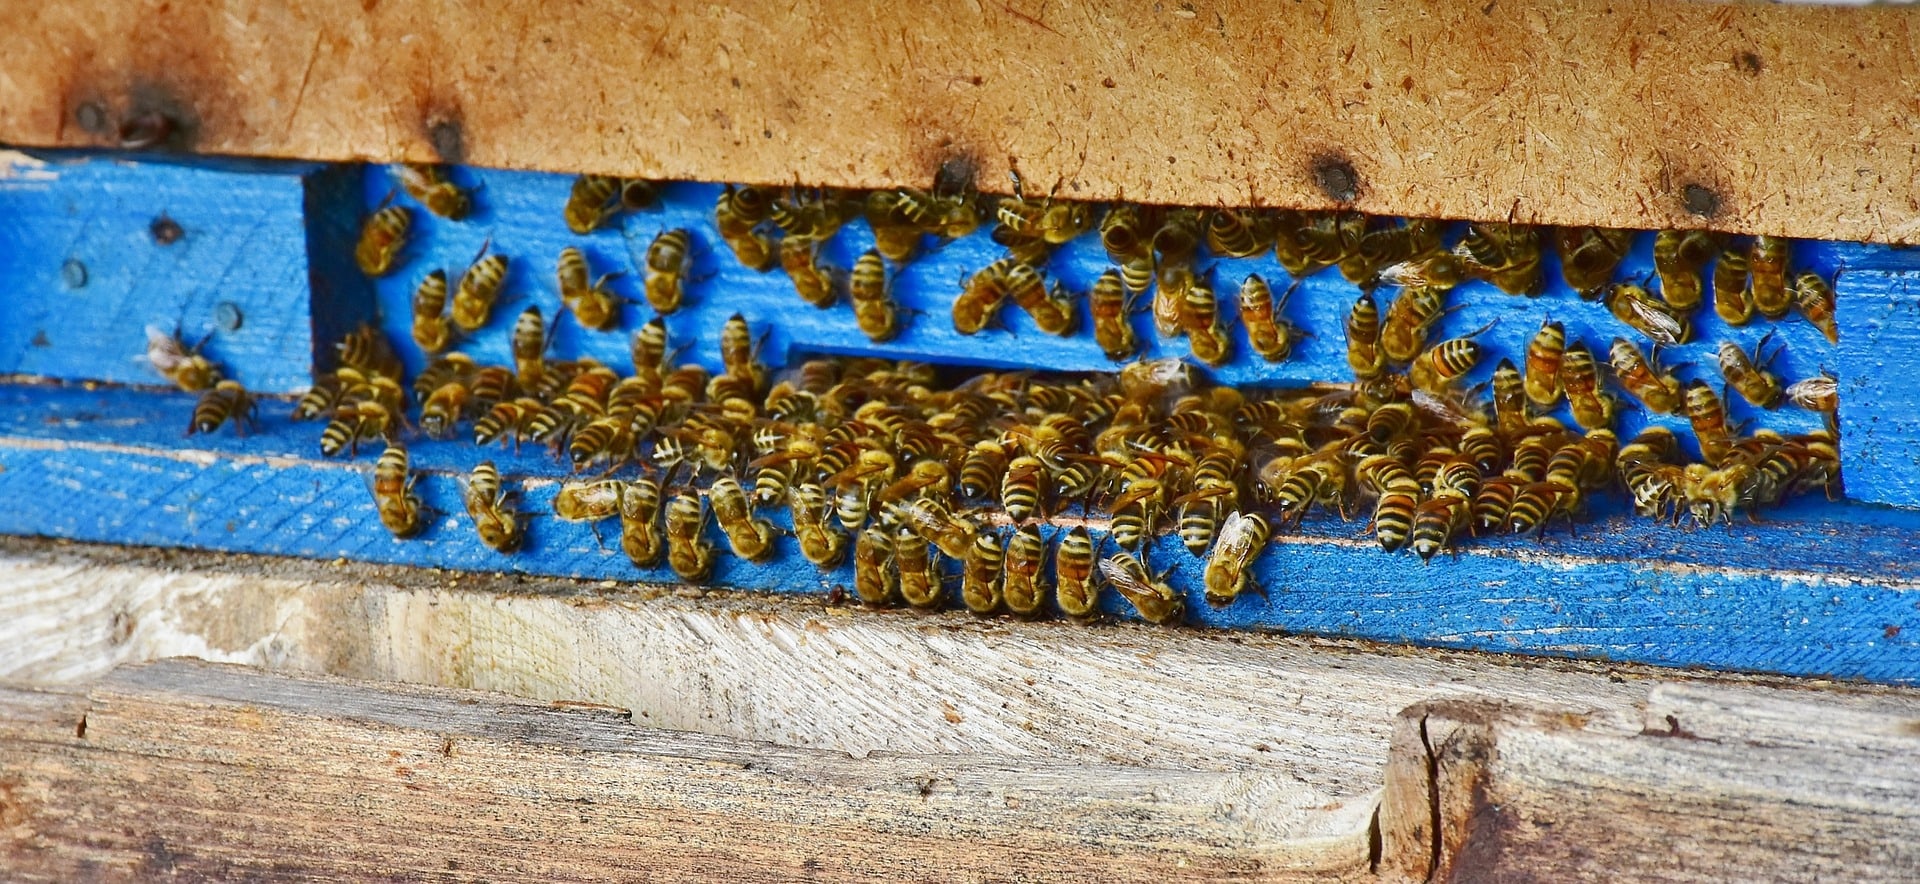 casa de abejas